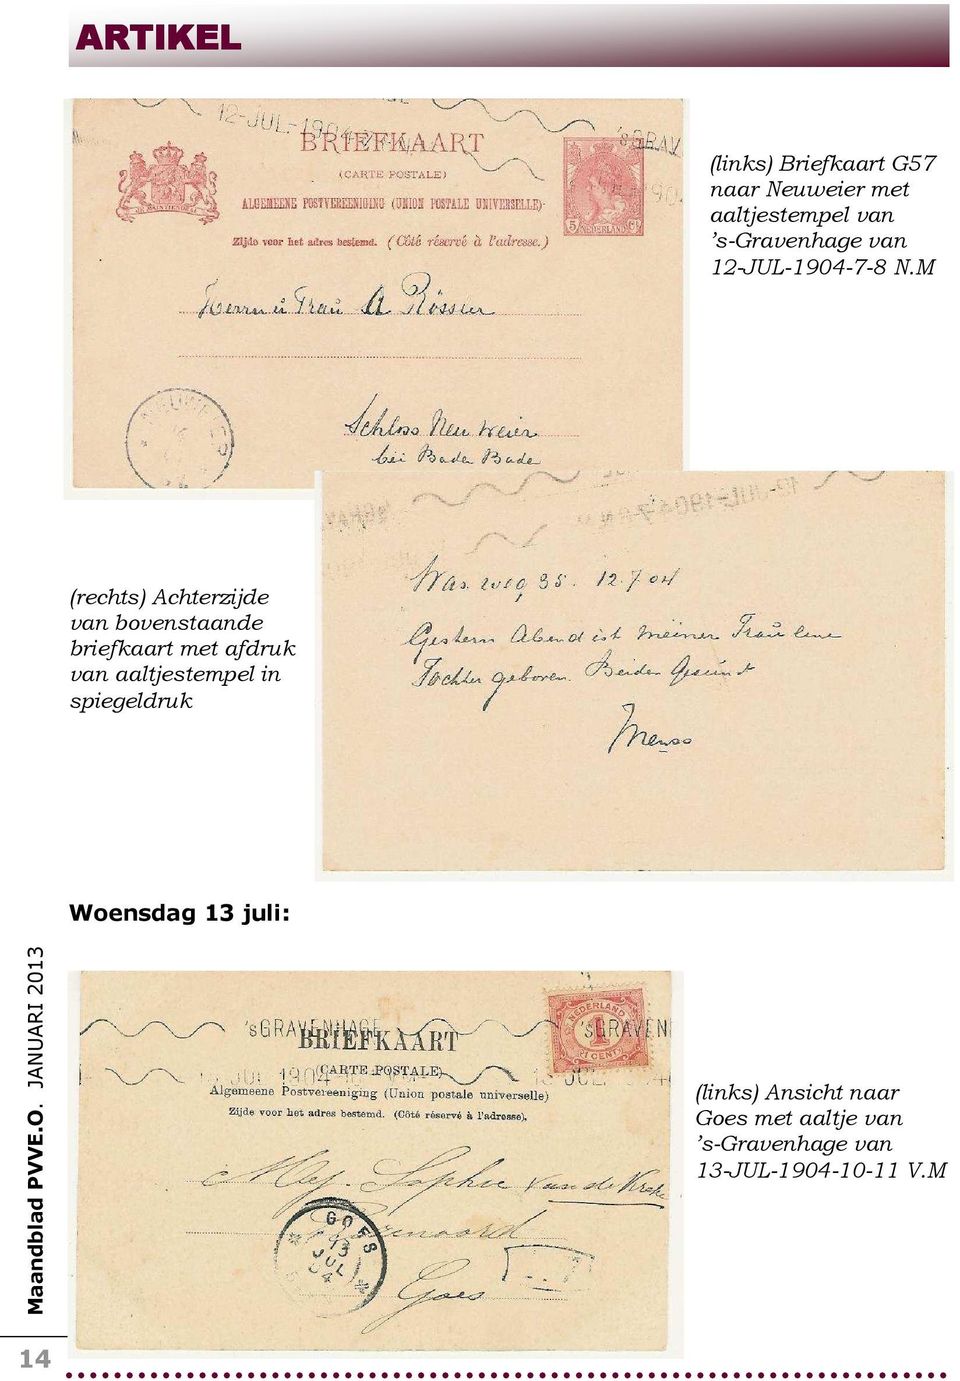 M (rechts) Achterzijde van bovenstaande briefkaart met afdruk van